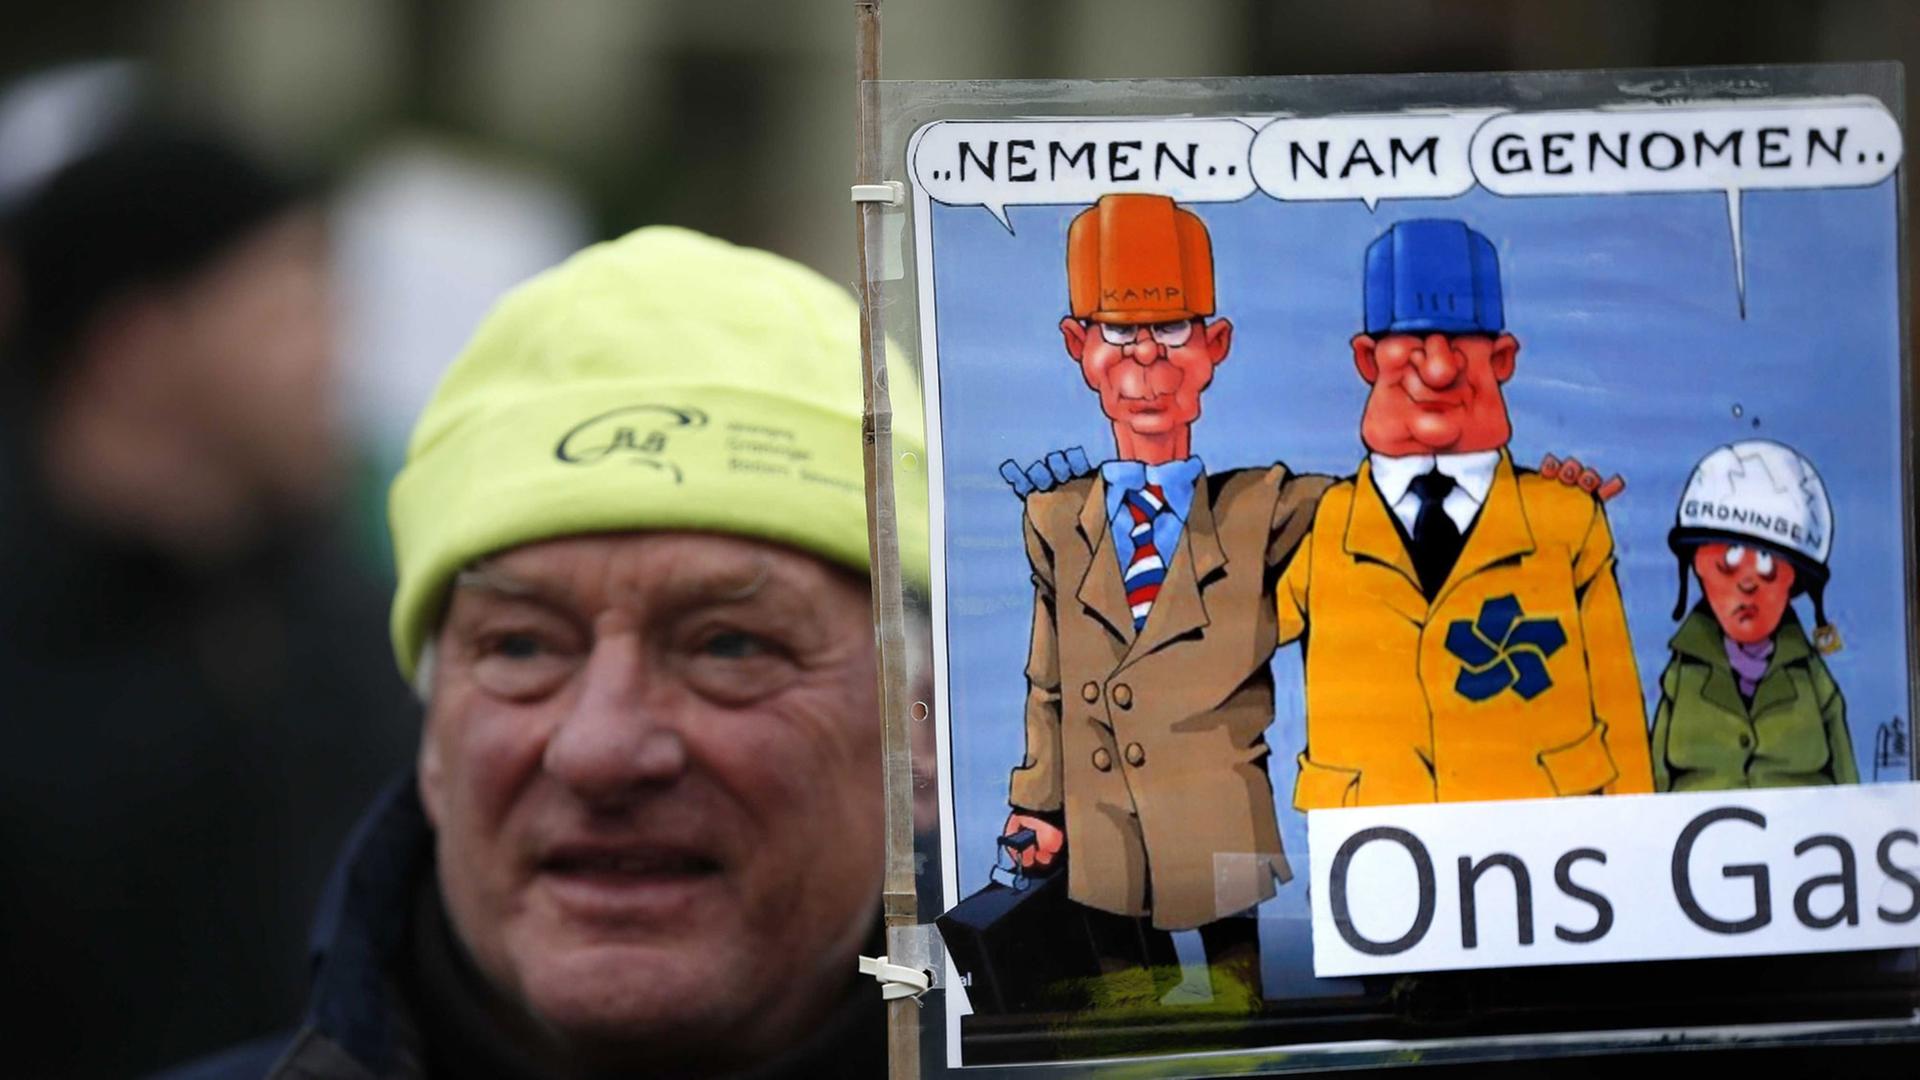 Ein Demonstrant gegen die Erdgasförderung in Loppersum hält ein Schild hoch mit der Aufschrift "Take, took, taken our gas"